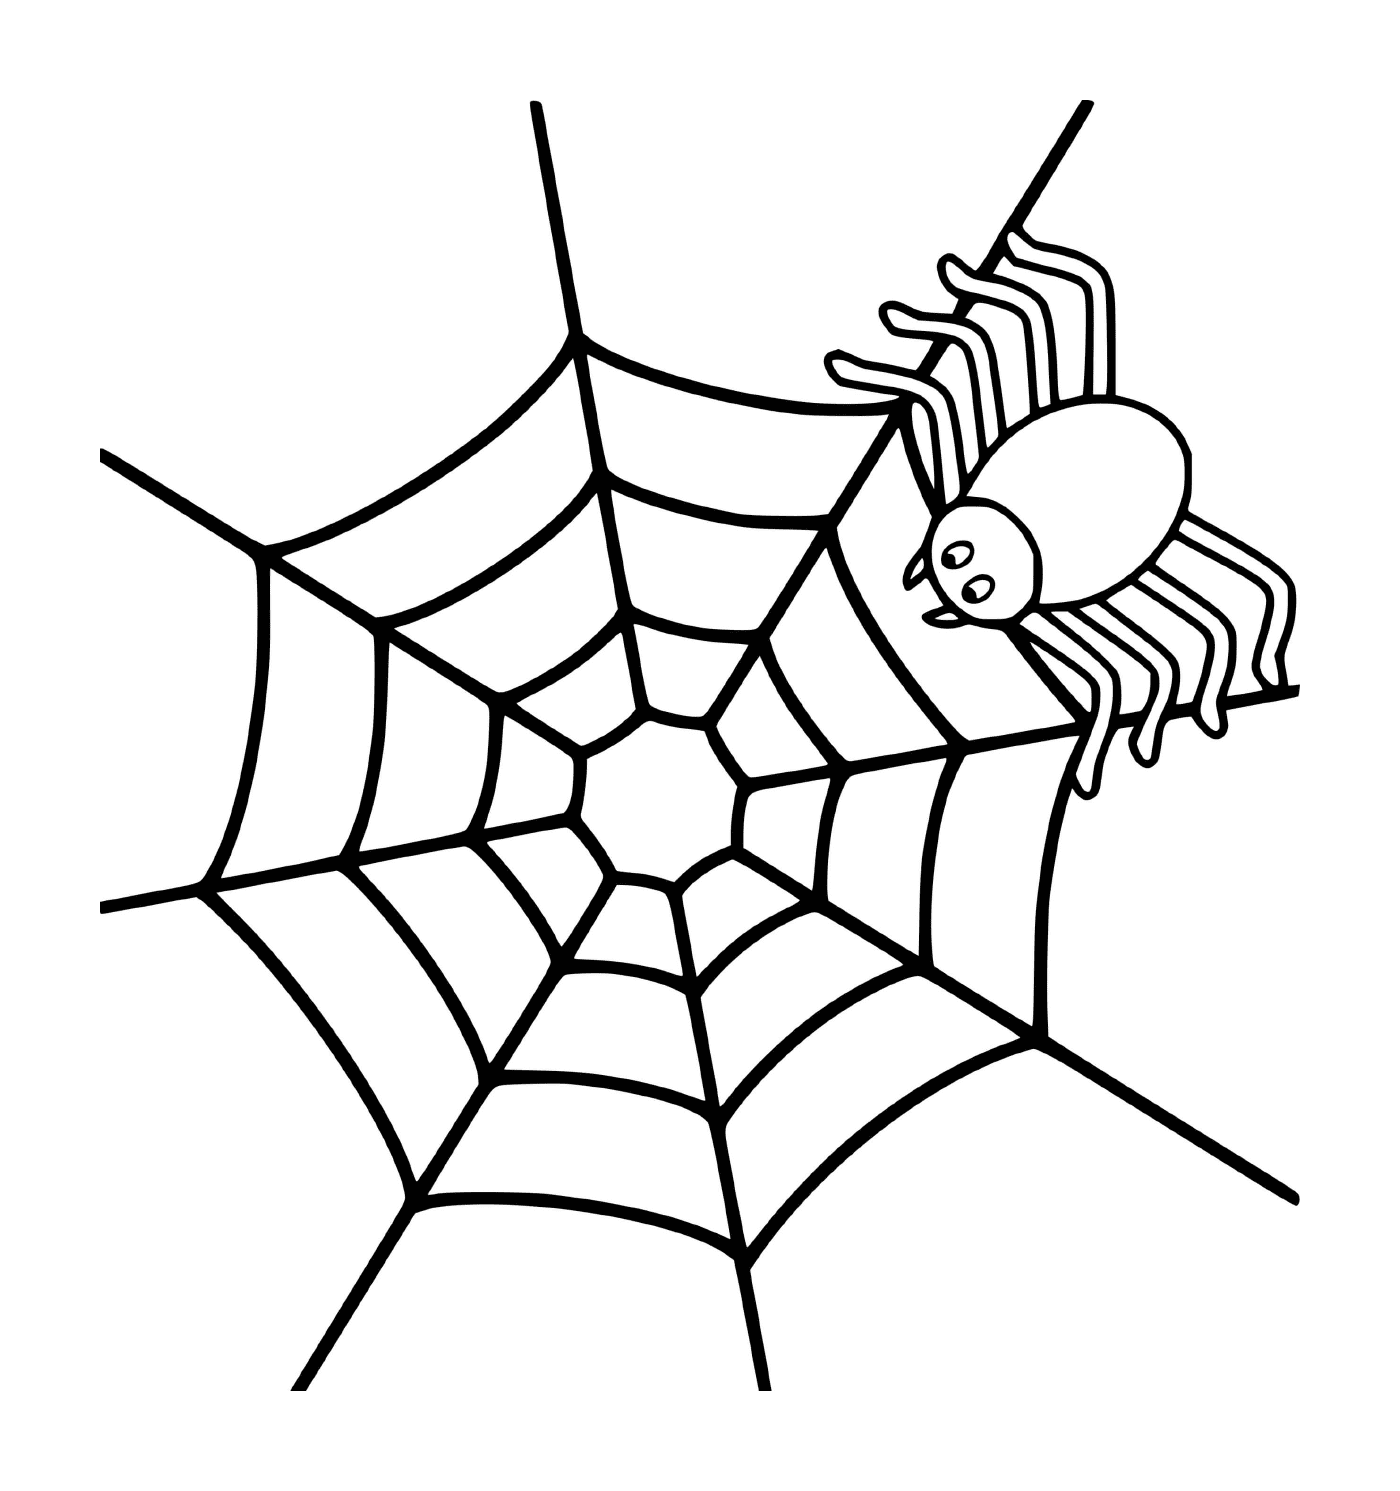   Une araignée simple sur une toile 